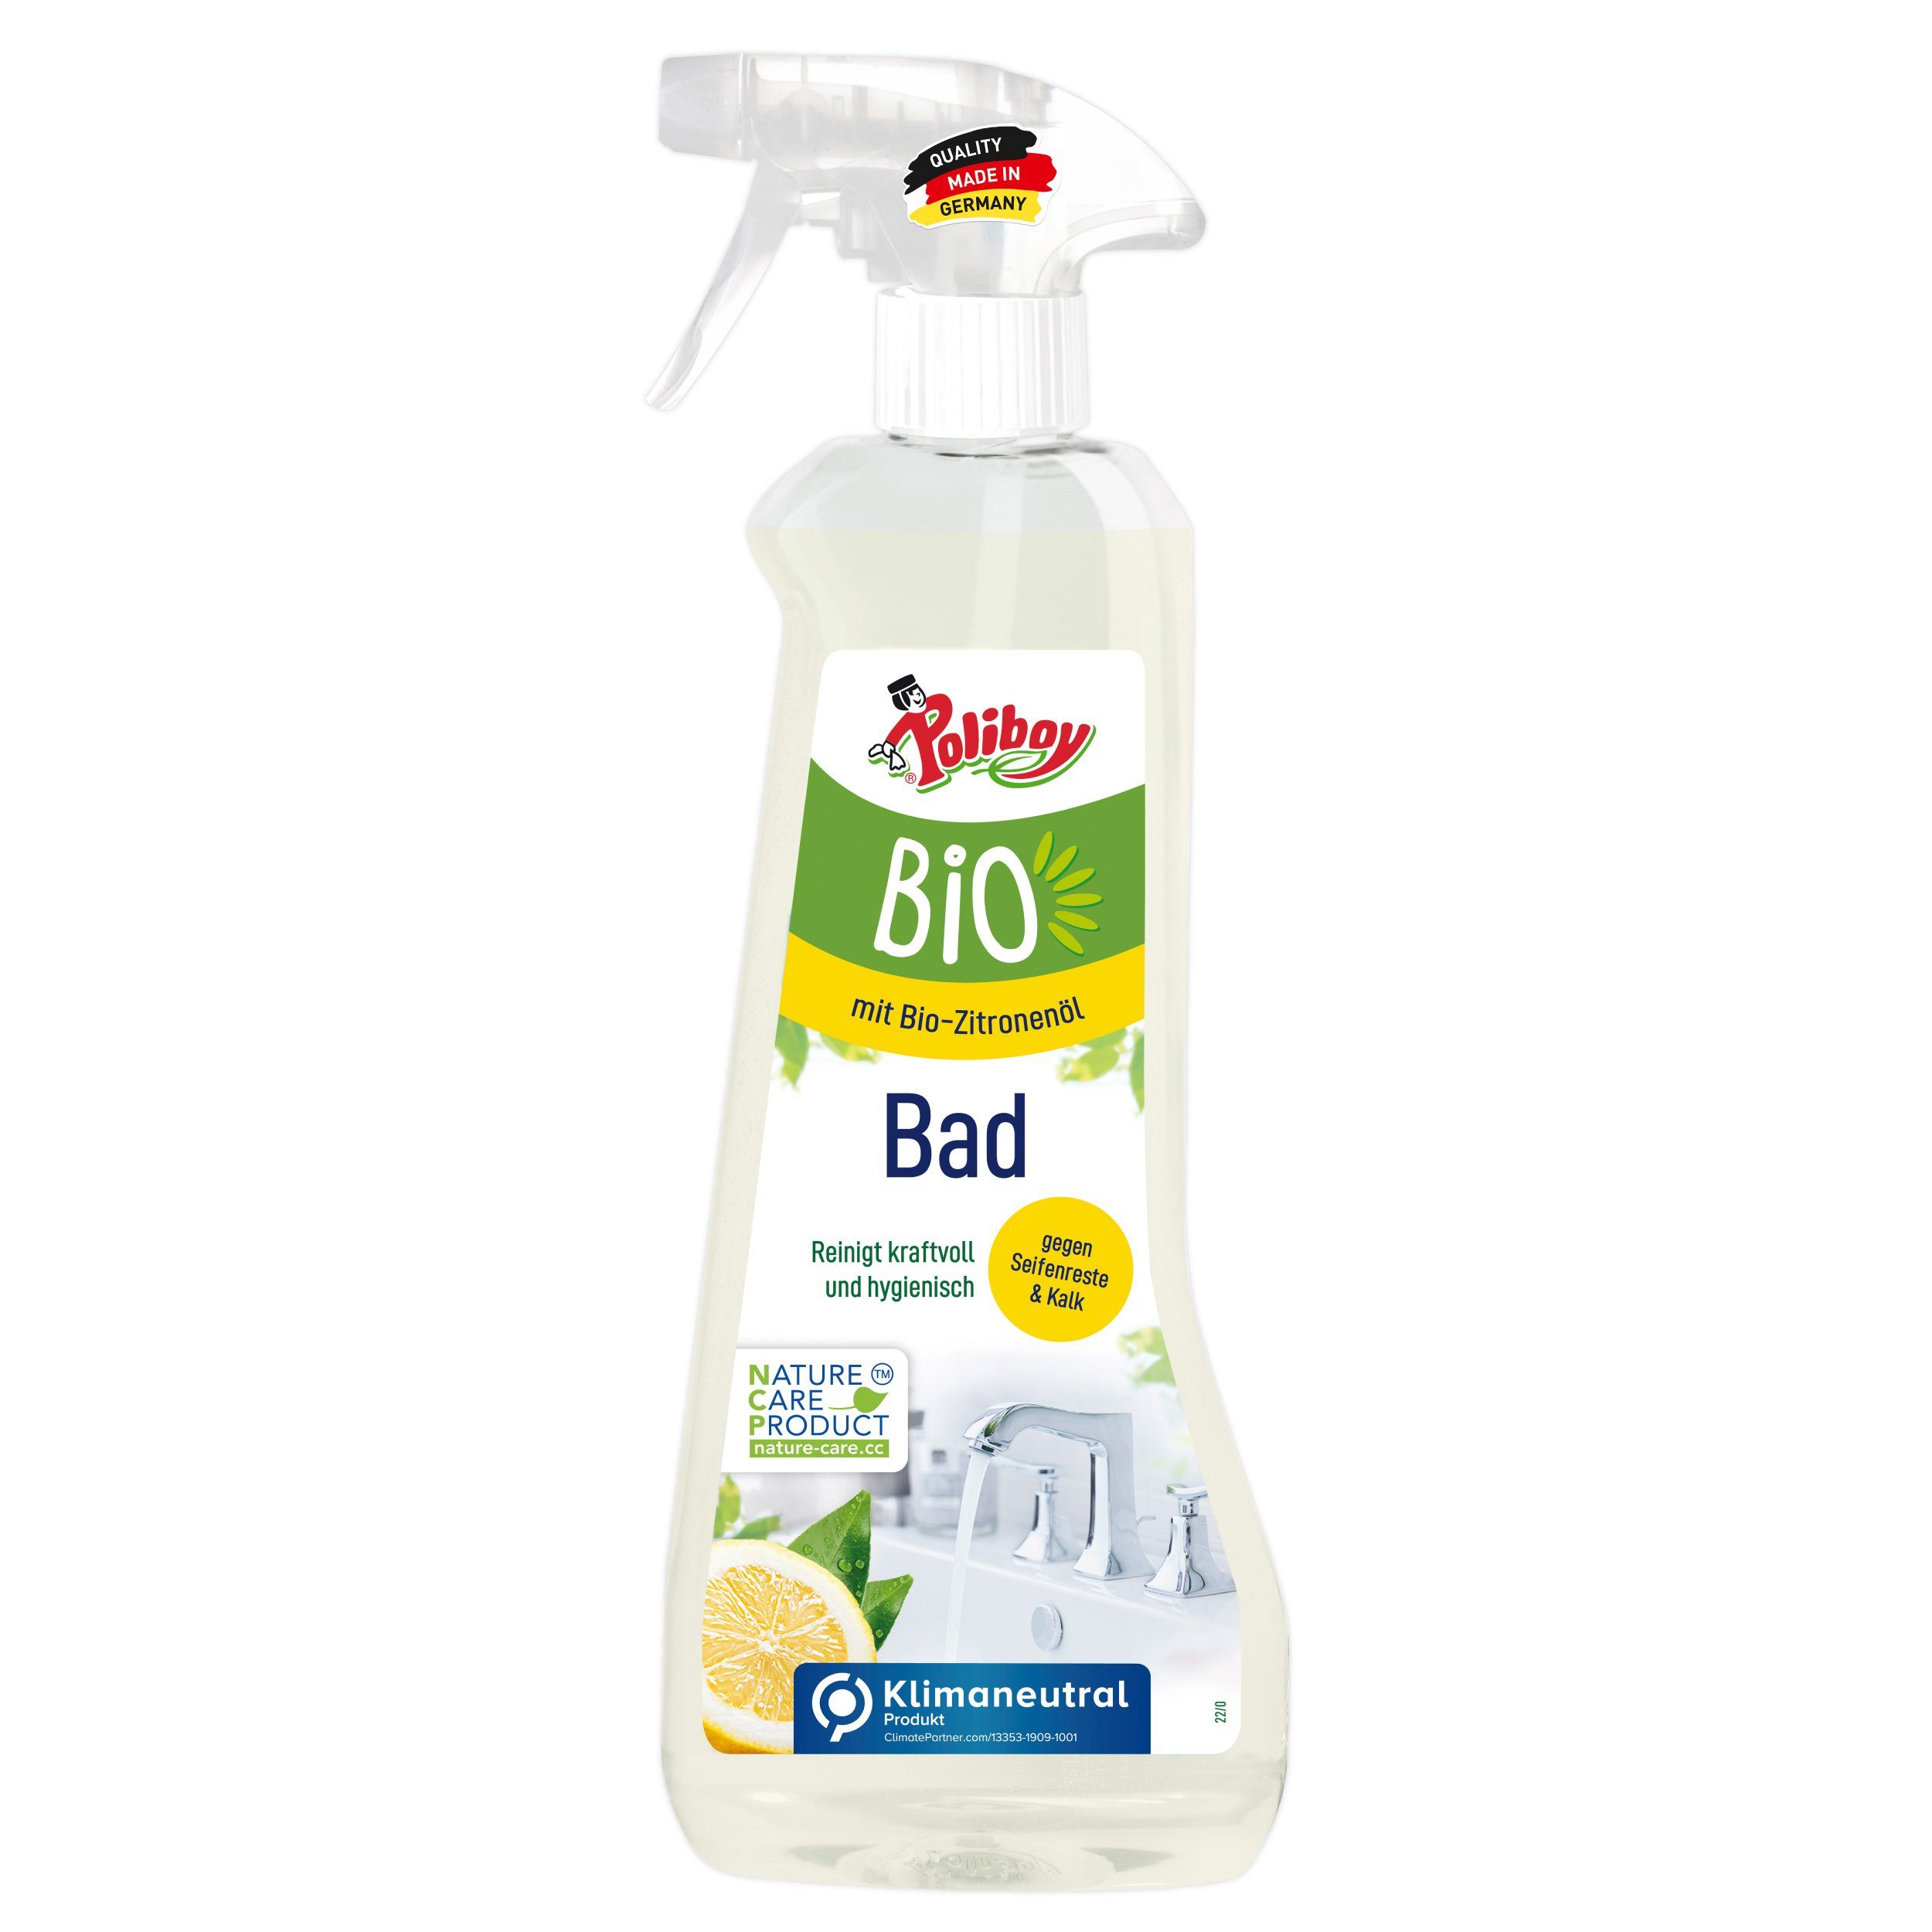 poliboy – 500 ml – Bio Badreiniger (zum einfachen Reinigen des Badezimmers geeignet – Made in Germany)